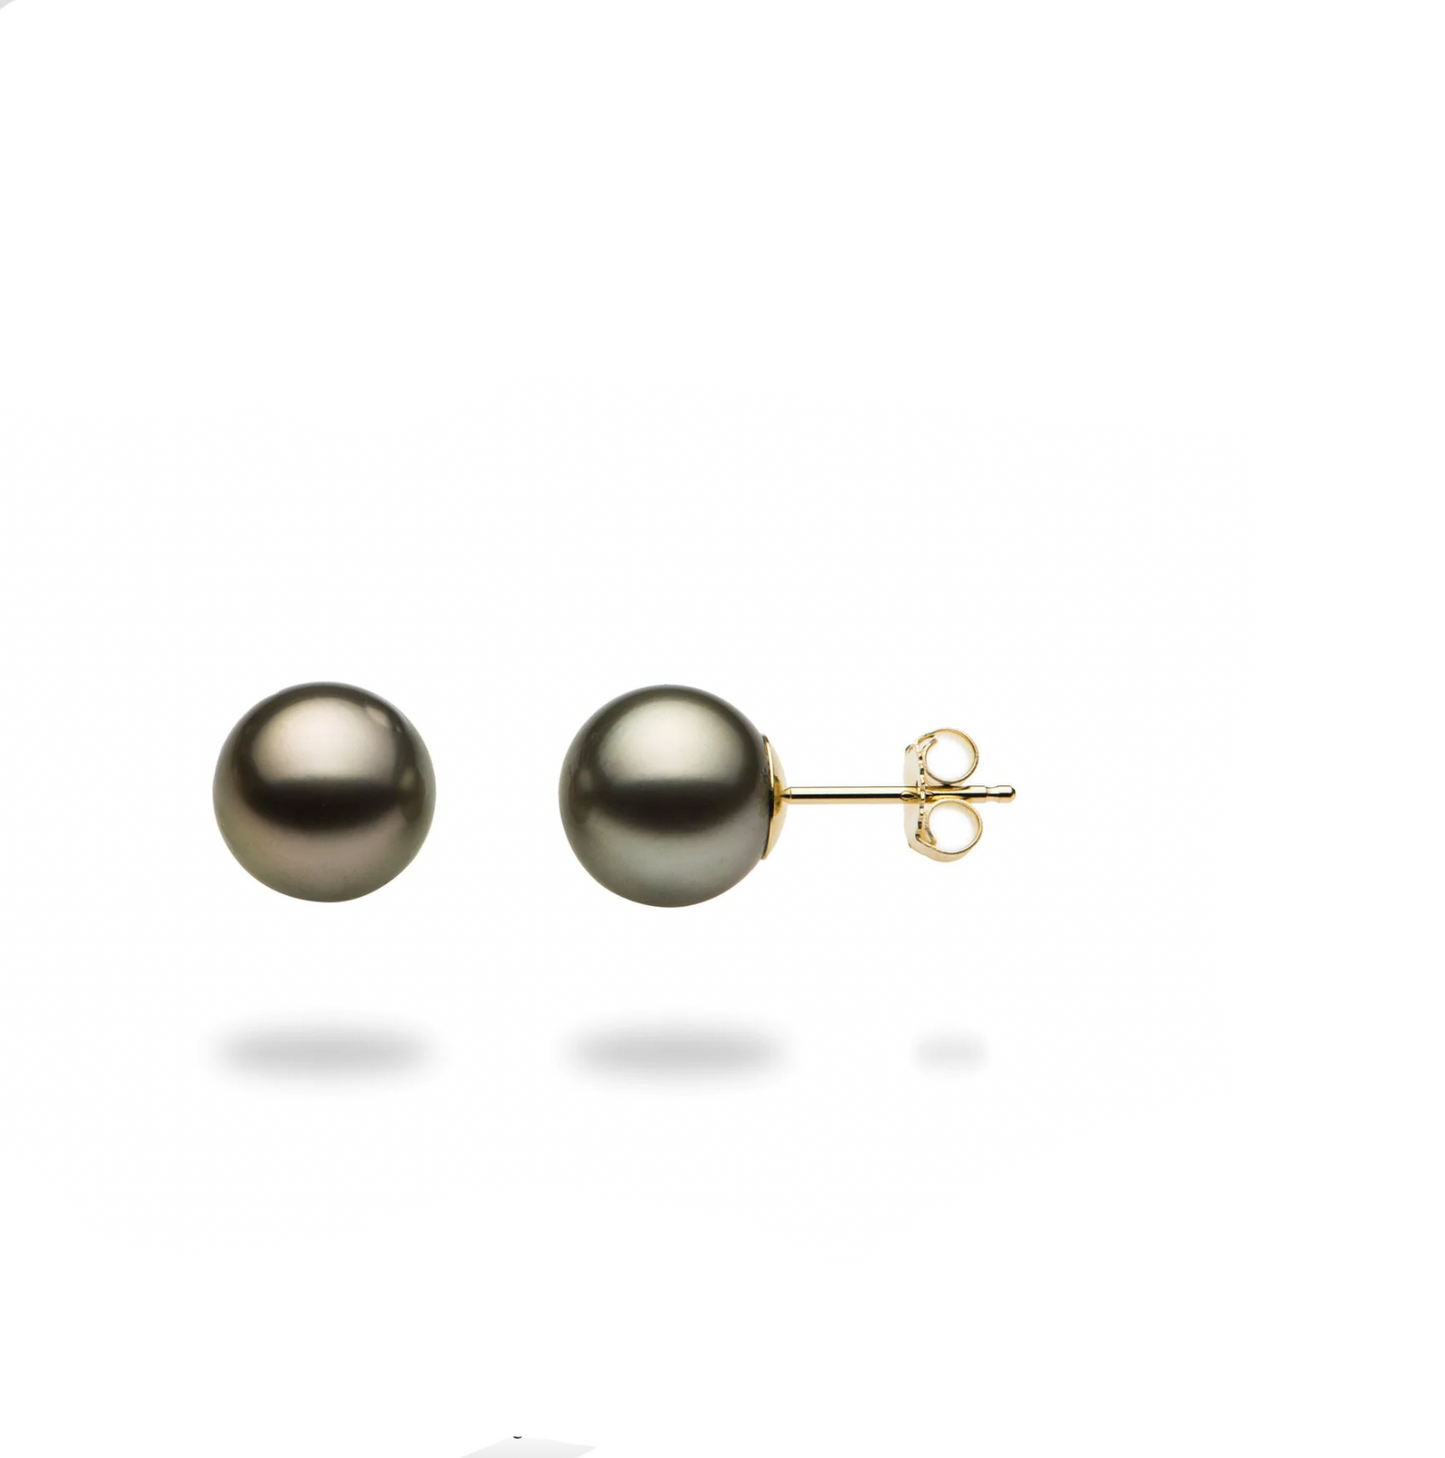 Black Genuine Pearl 14K Solid Gold Earrings Studs - BEYOND